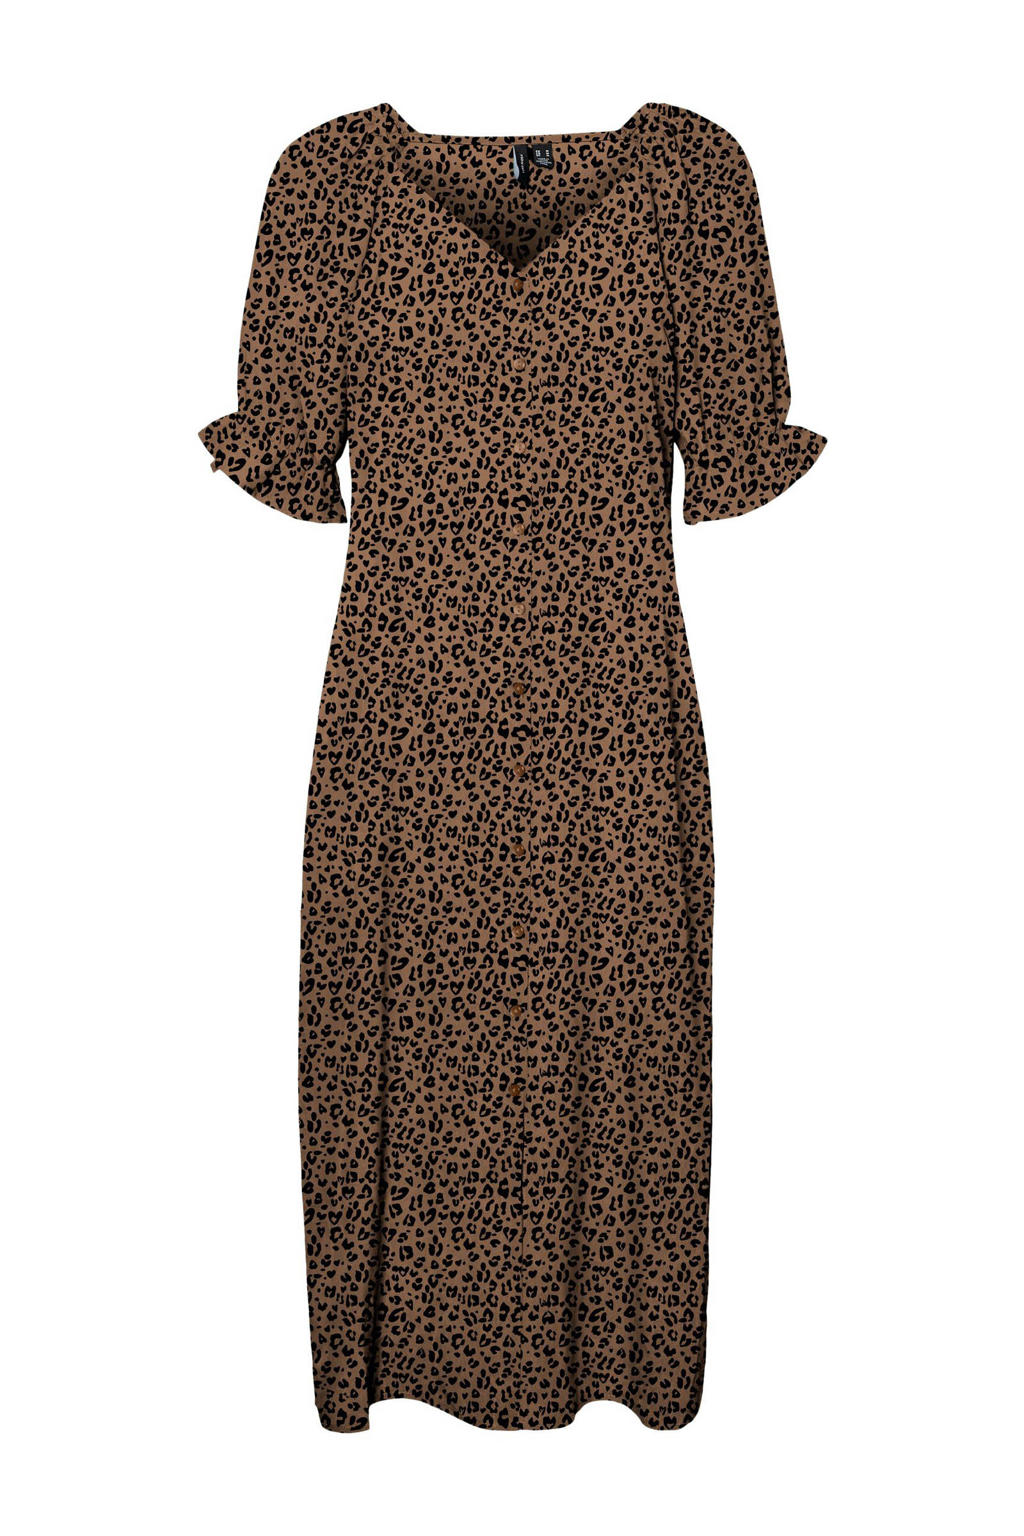 Bruine dames VERO MODA maxi jurk met plooien van polyester met panterprint, korte mouwen en V-hals